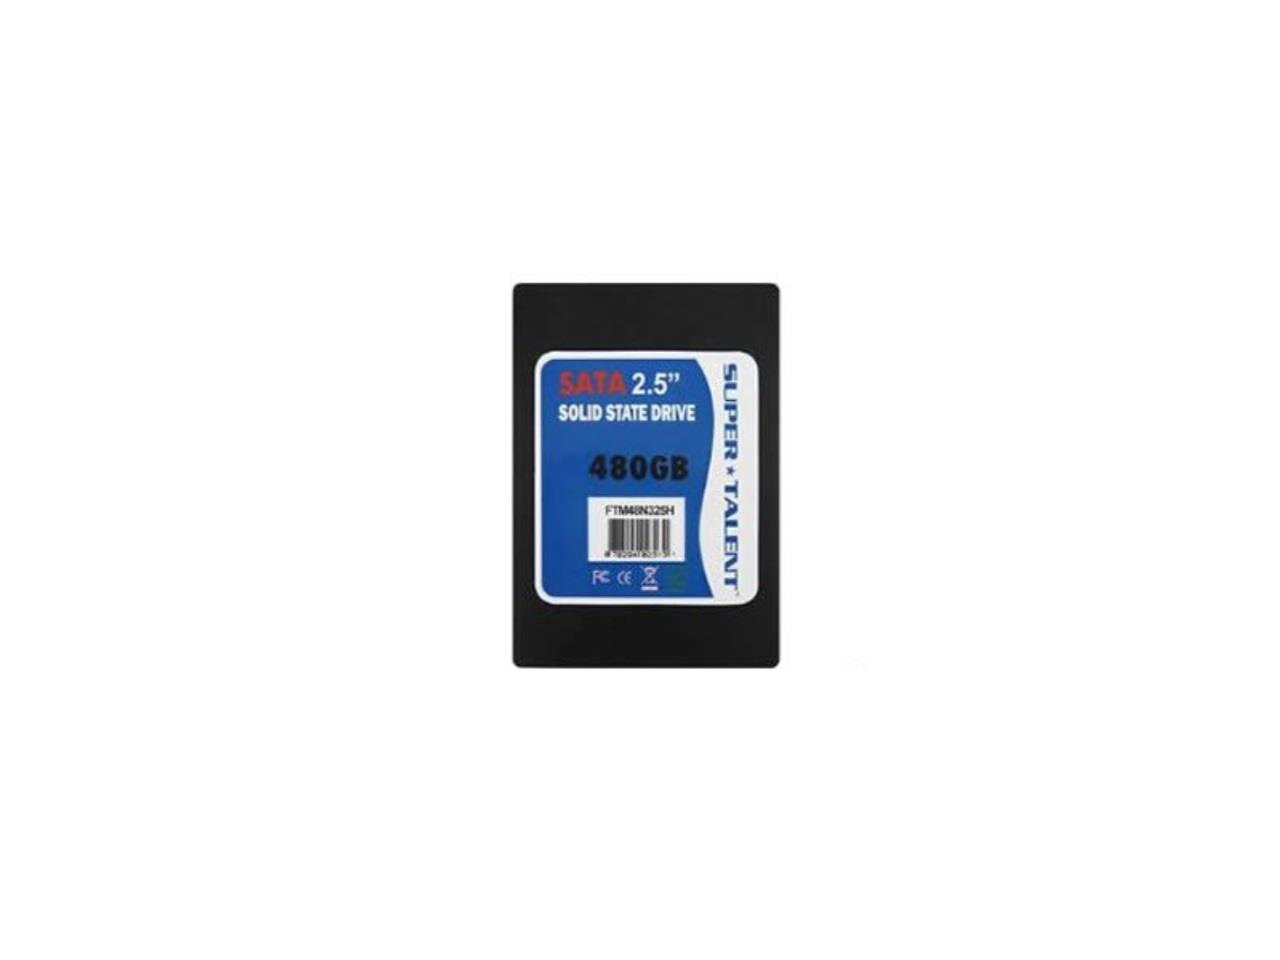 Super Talent TeraNova 480GB 2.5 inch SATA3 Solid State Drive (MLC)